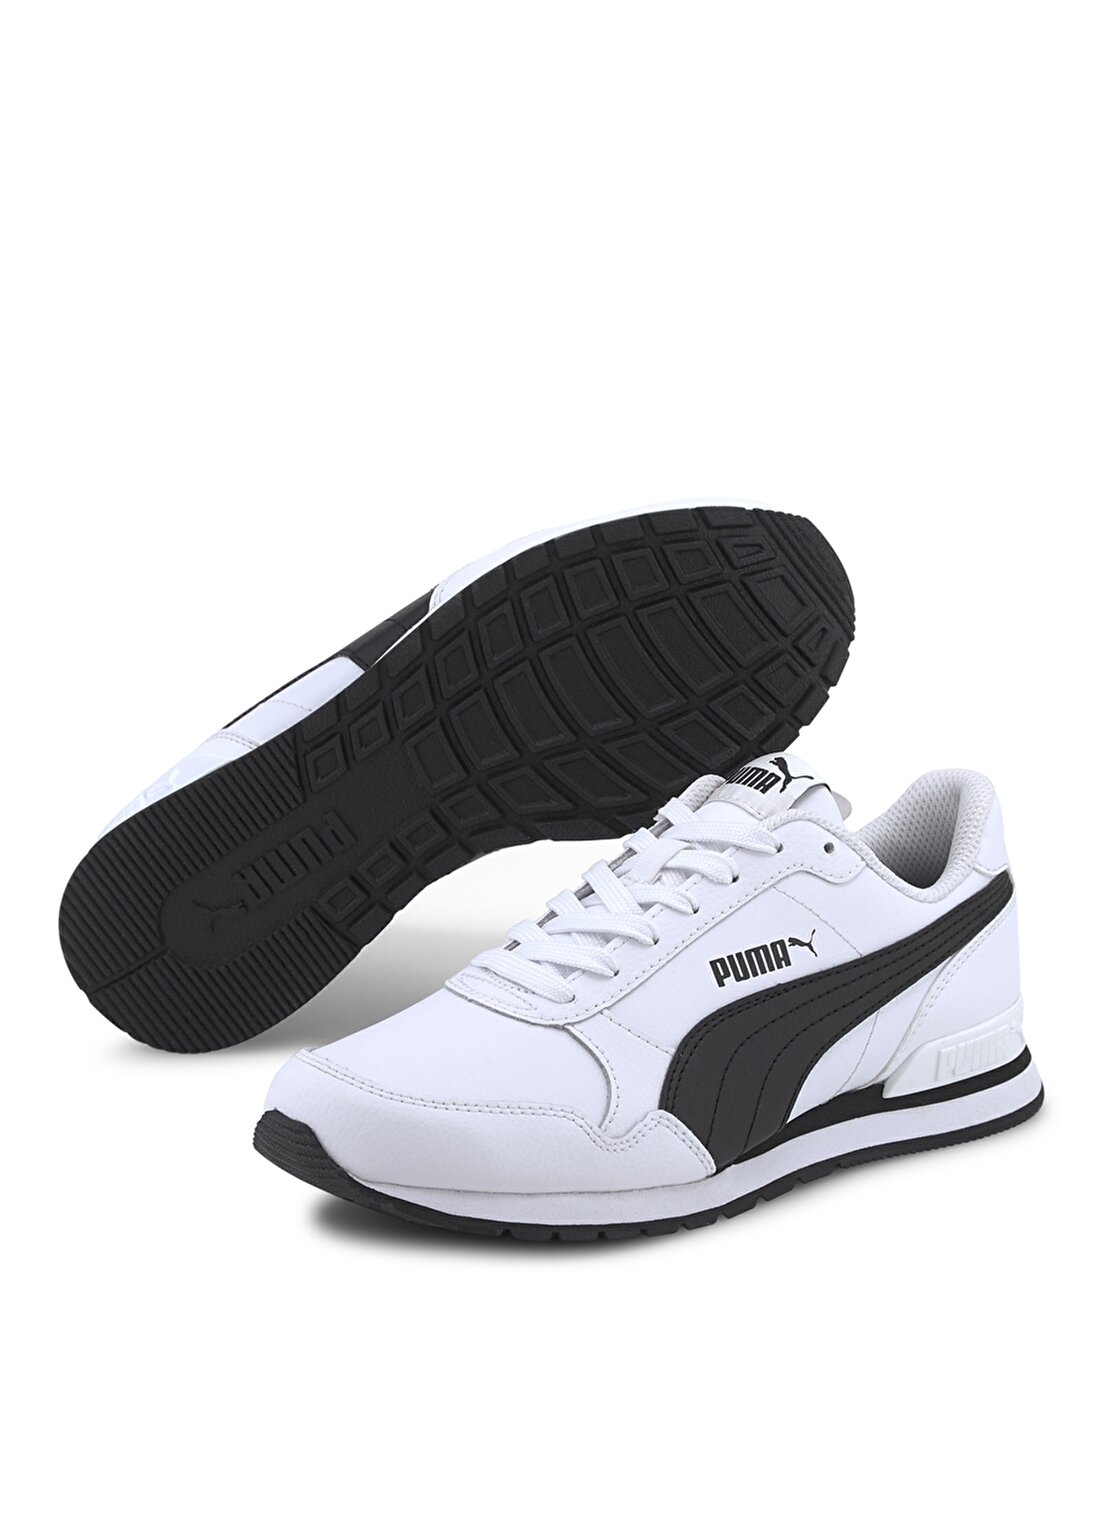 Puma 36695908 ST Runner V2 Beyaz - Siyah Erkek Çocuk Yürüyüş Ayakkabısı